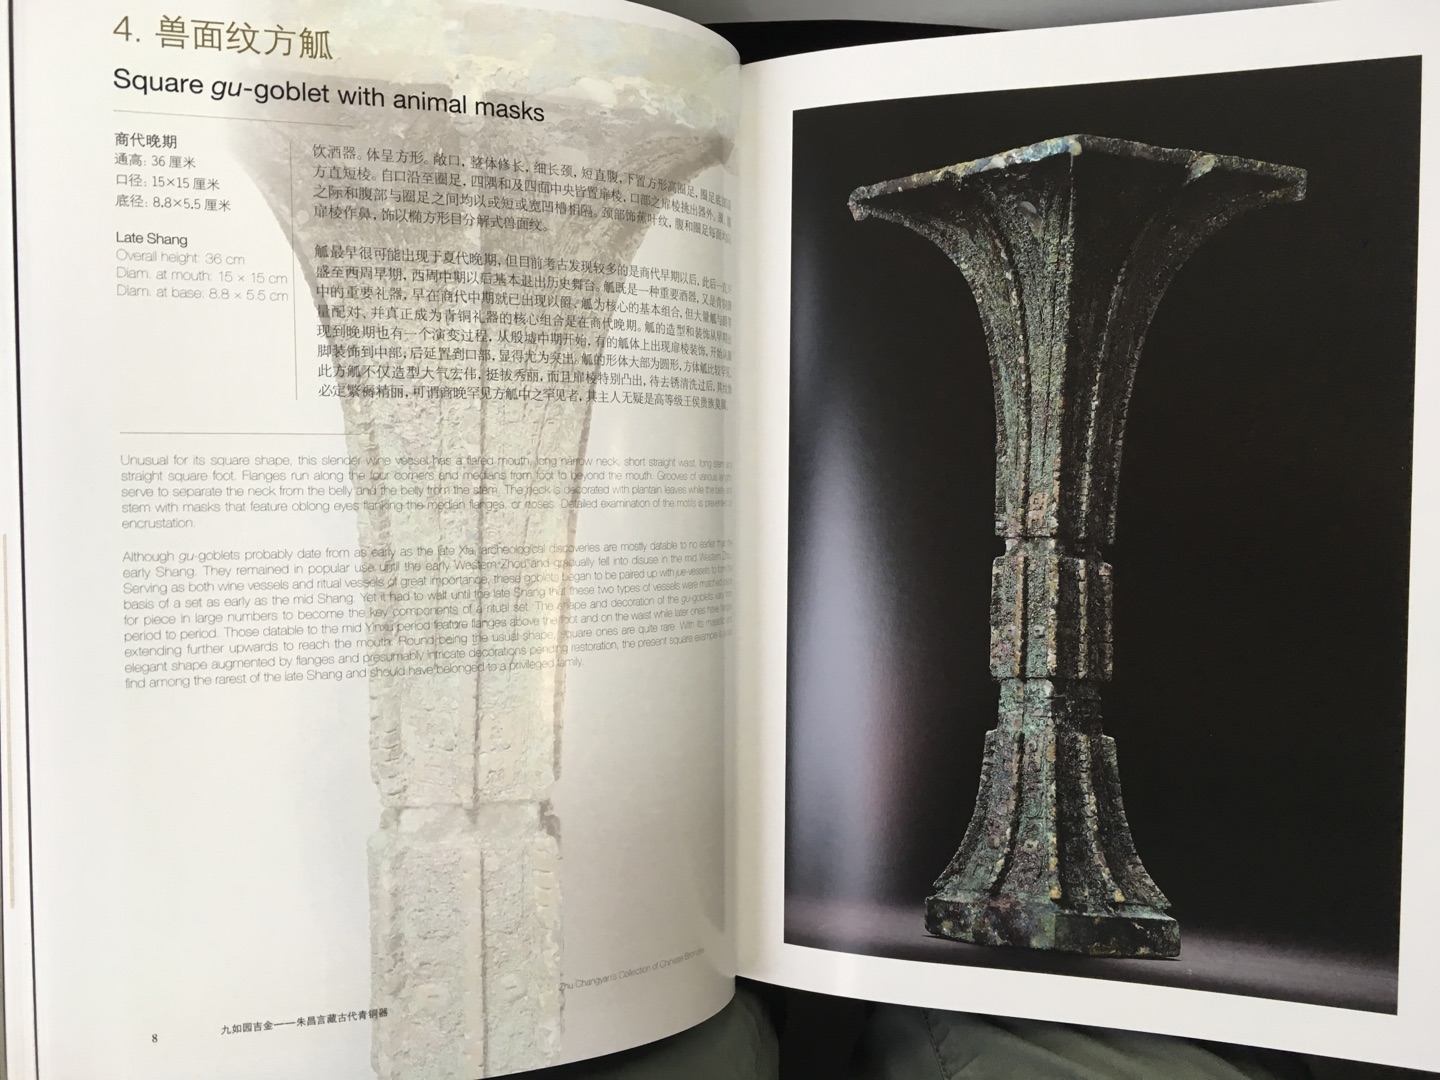 藏家把最珍贵的两件藏品捐赠了上海博物馆。功德无量?